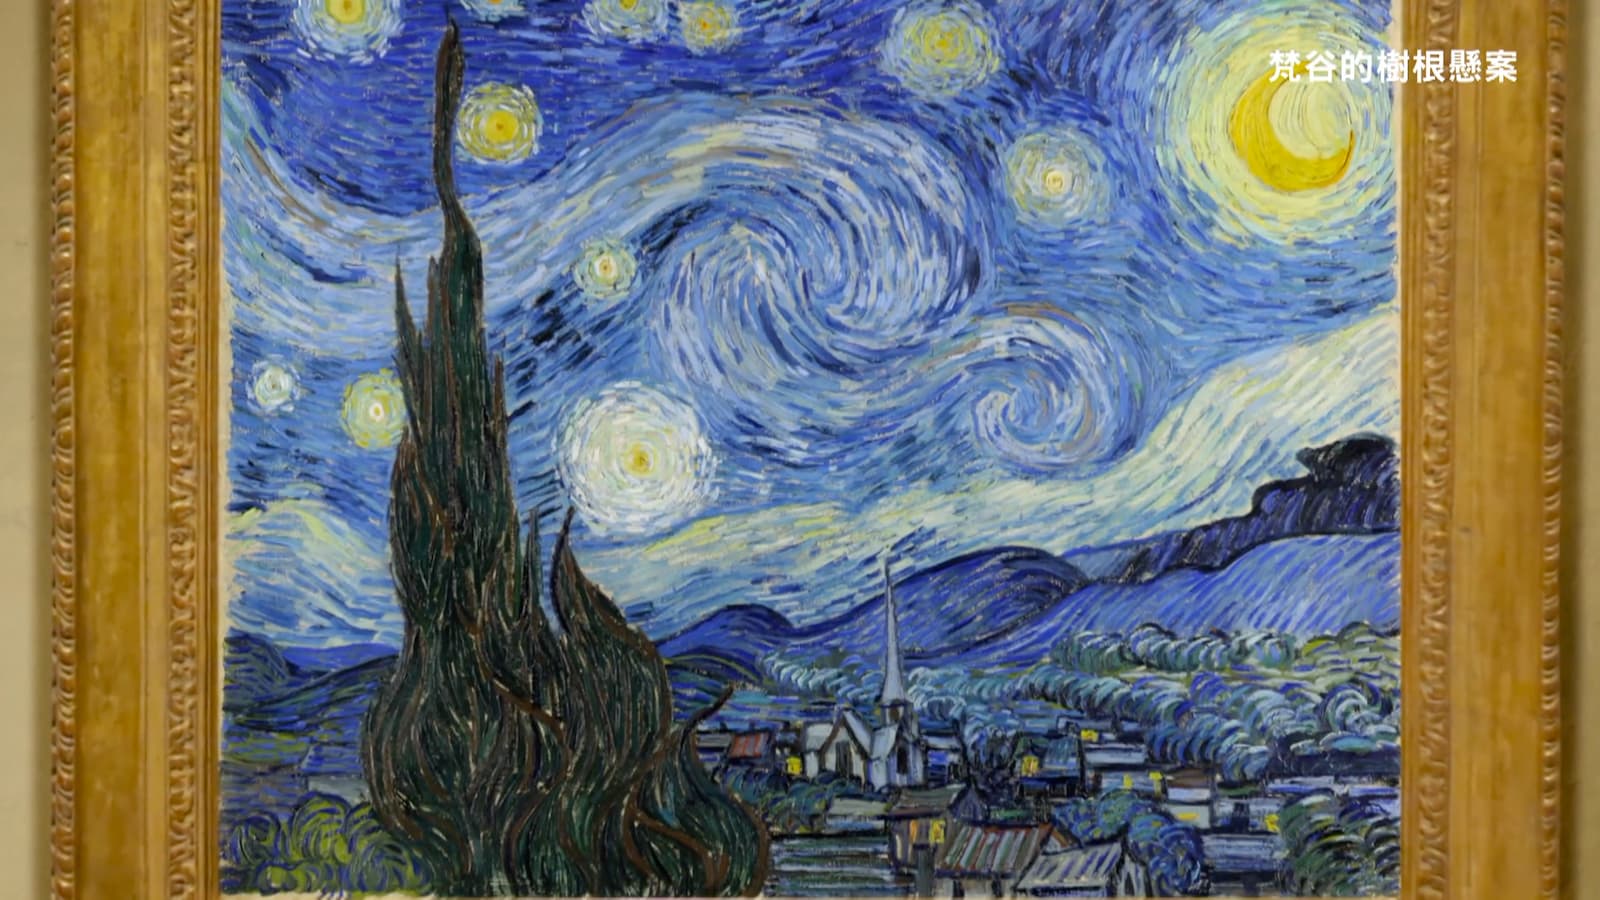 梵谷的藝術作品《星夜》（The Starry Night），這幅畫作於1889年6月所繪製，描繪了在法國普羅旺斯地區聖雷米的一家精神病院朝東的窗戶所看到的夜晚景色，此外還包括了一個想像中的村莊。劇照／《梵谷的樹根懸案》